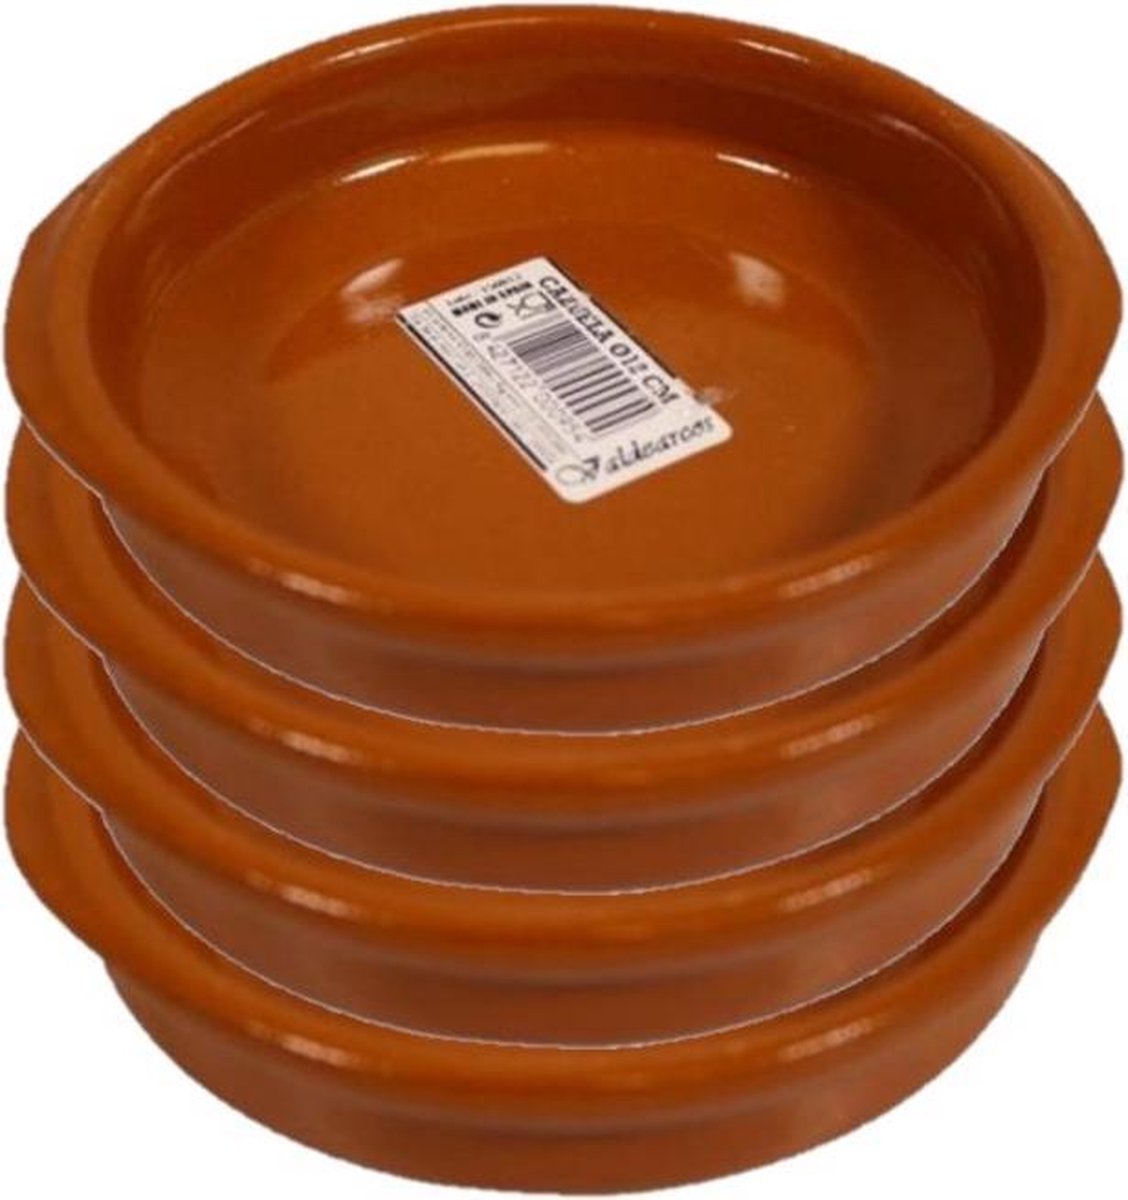 Set van 8x stuks tapas bakjes/schaaltjes Alicante met handvatten 12 cm - Tapas serveerschalen/borden/ovenschalen